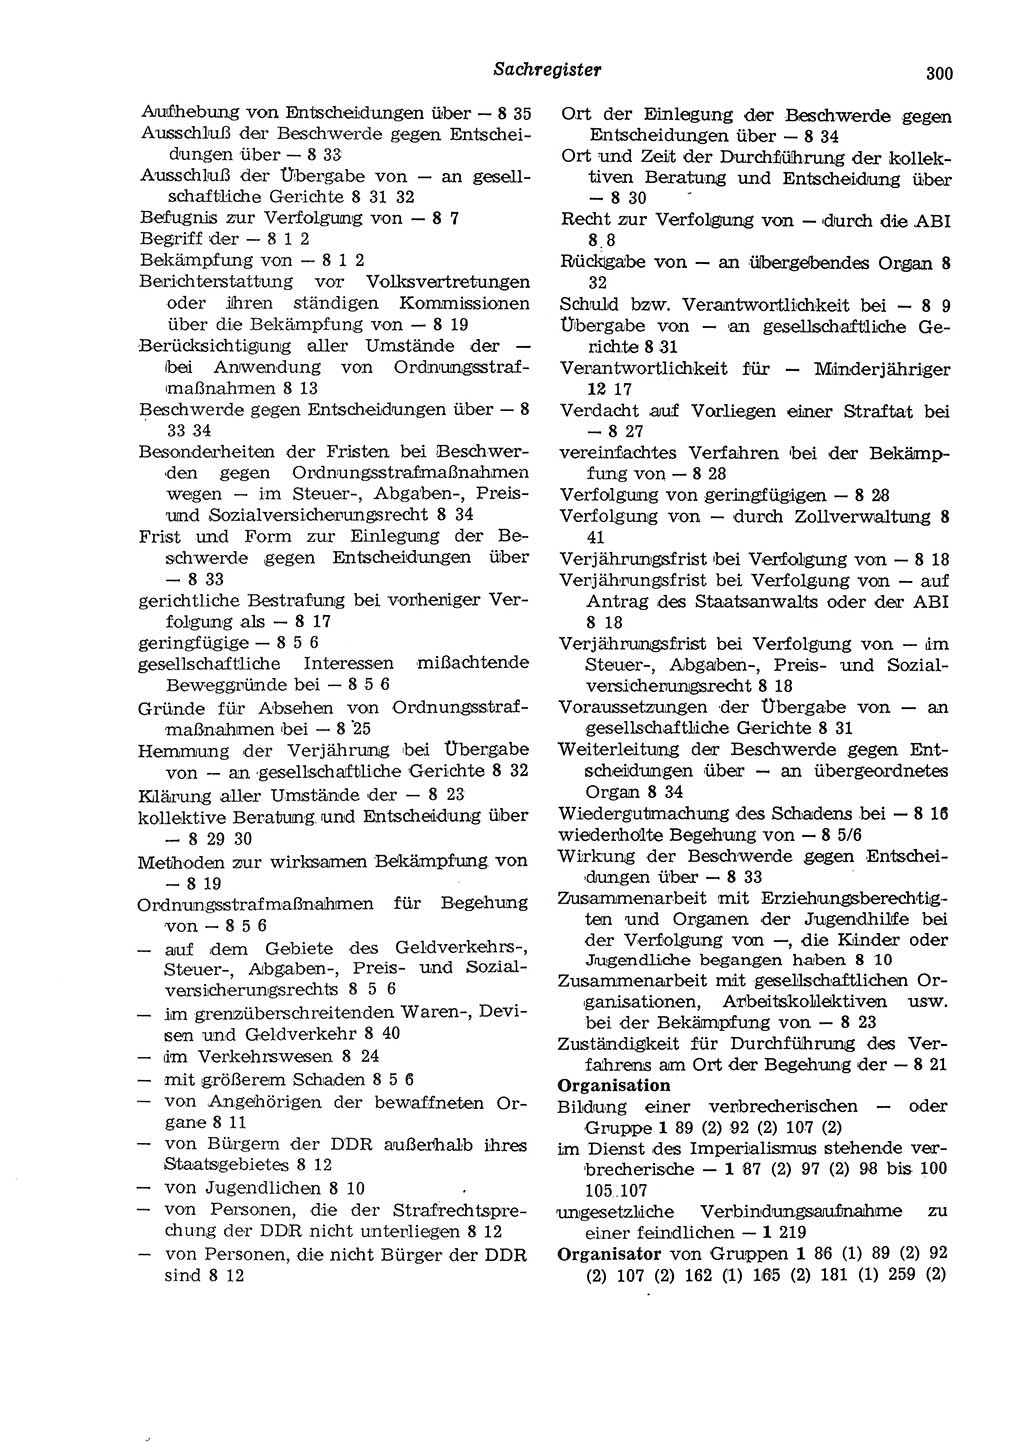 Strafgesetzbuch (StGB) der Deutschen Demokratischen Republik (DDR) und angrenzende Gesetze und Bestimmungen 1975, Seite 300 (StGB DDR Ges. Best. 1975, S. 300)